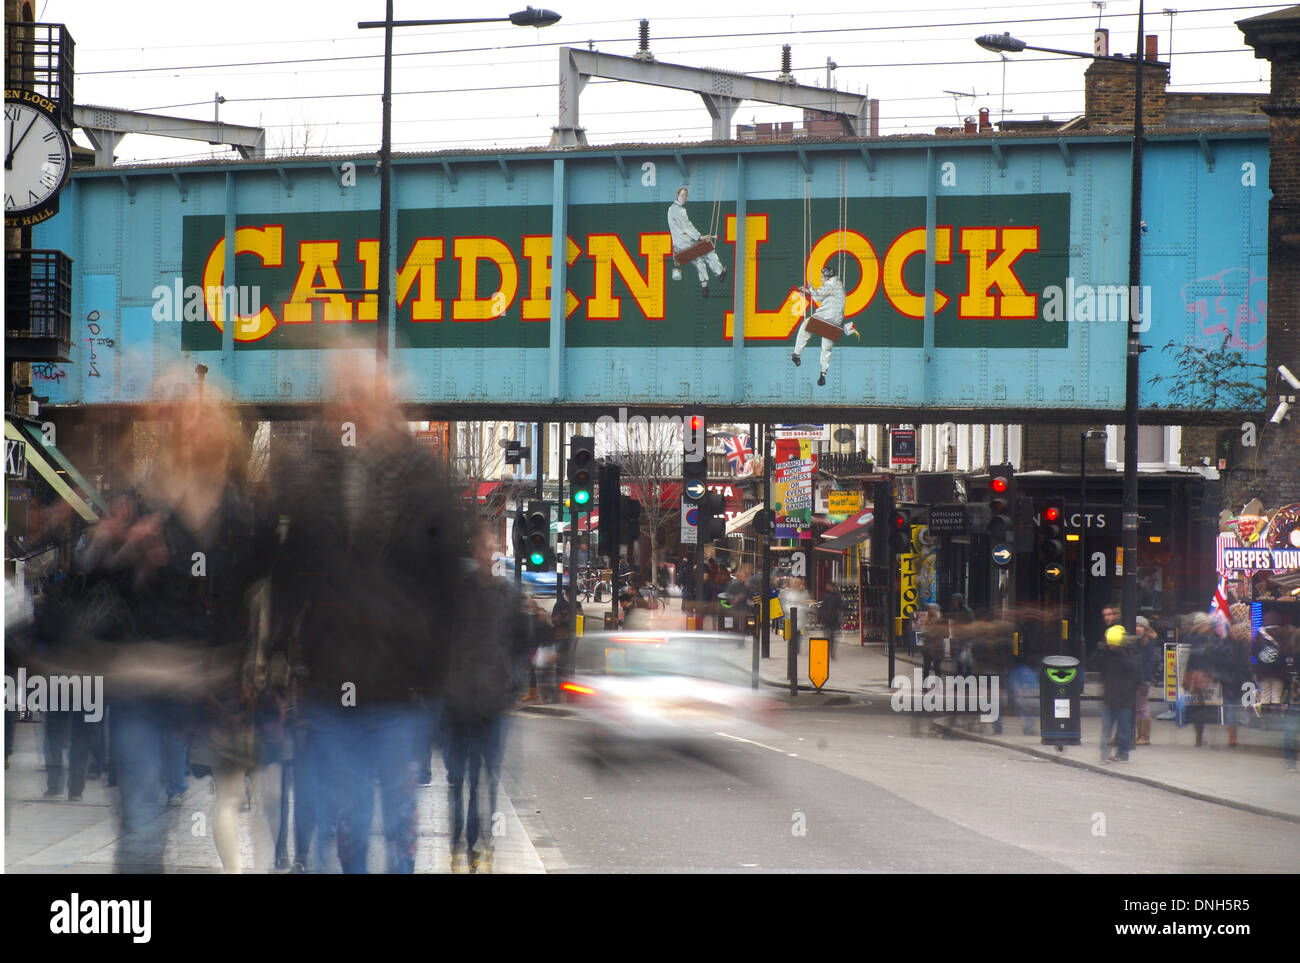 camden town   camden lock Stock Photo